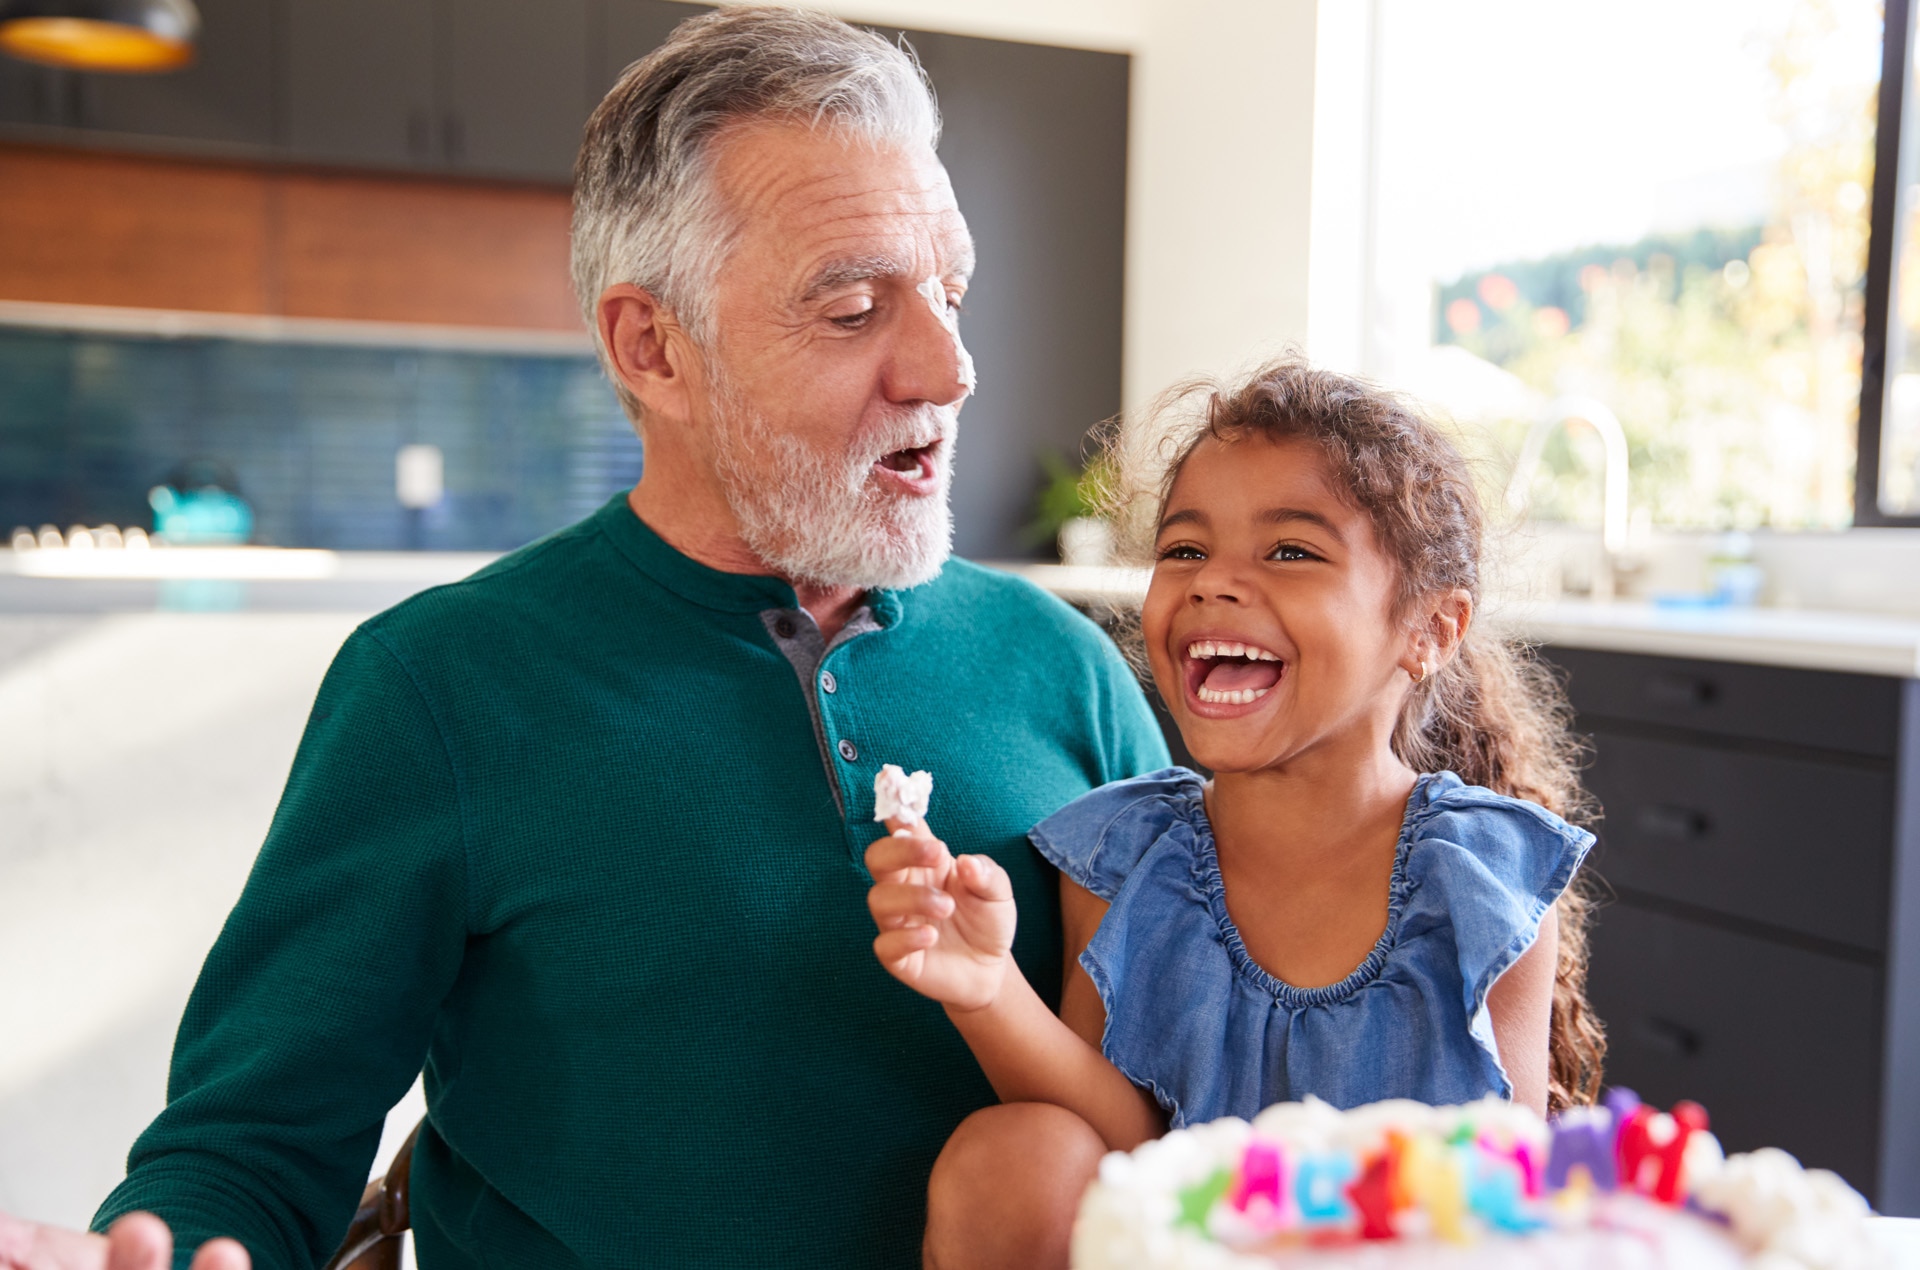 A nagyapjával születésnapot ünneplő unoka tortakrémet ken a nagyapa orrára, és kacag rajta